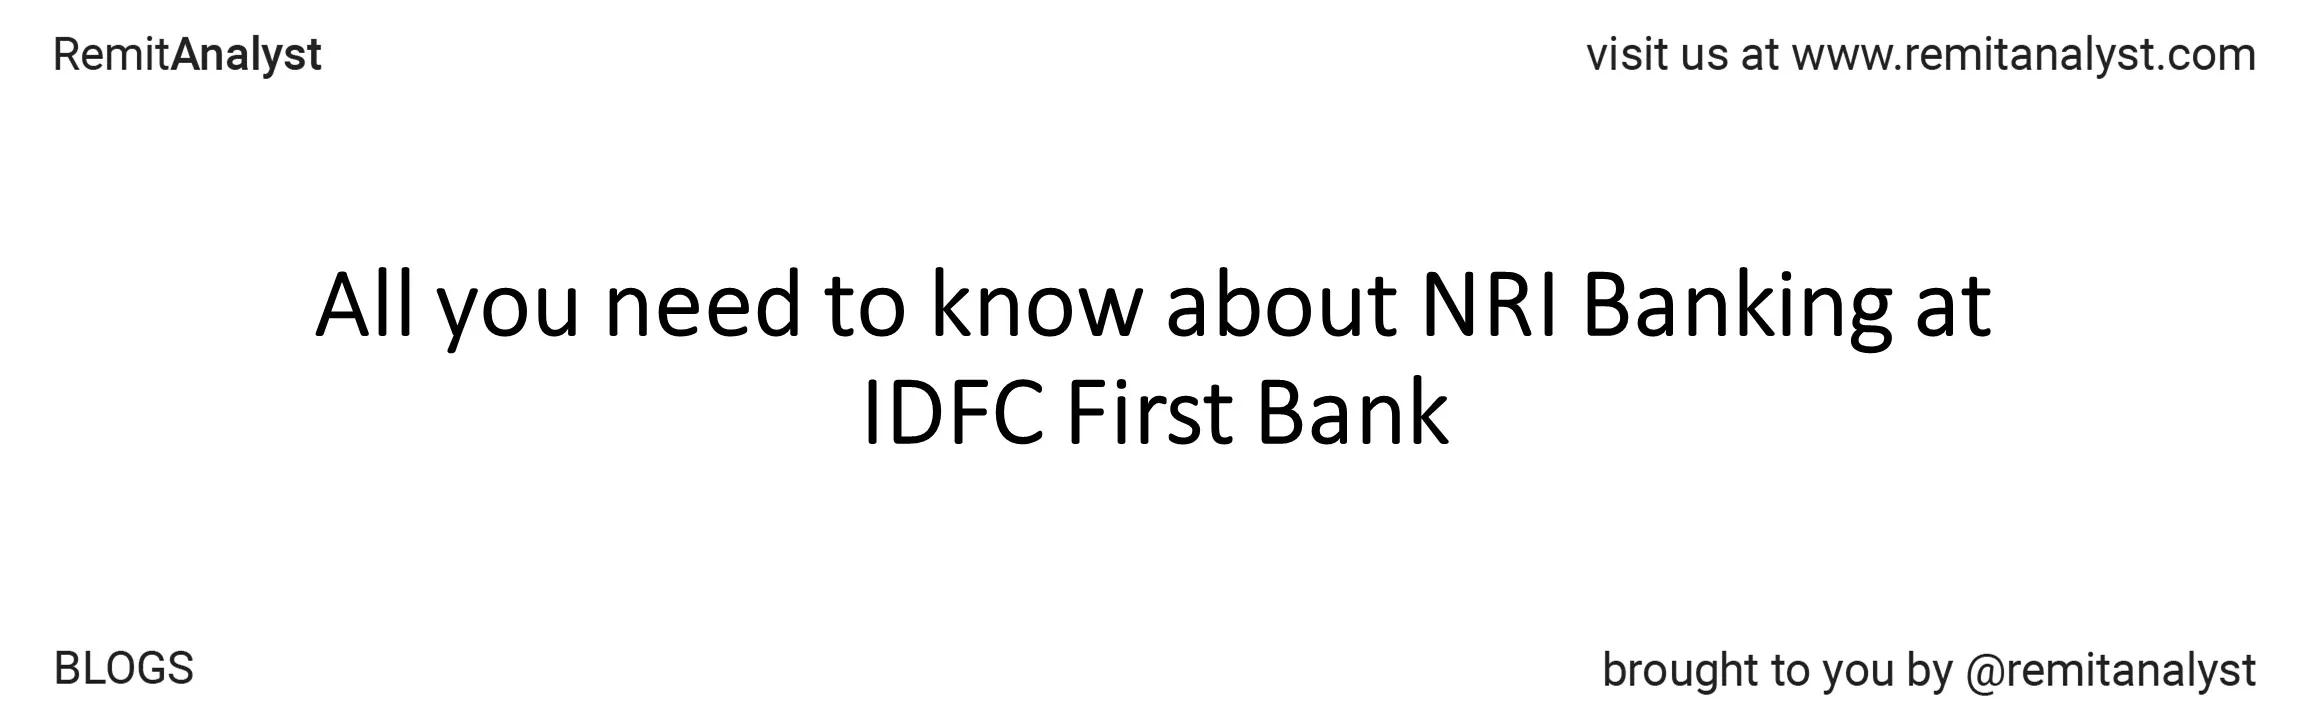 idfc-first-bank-title